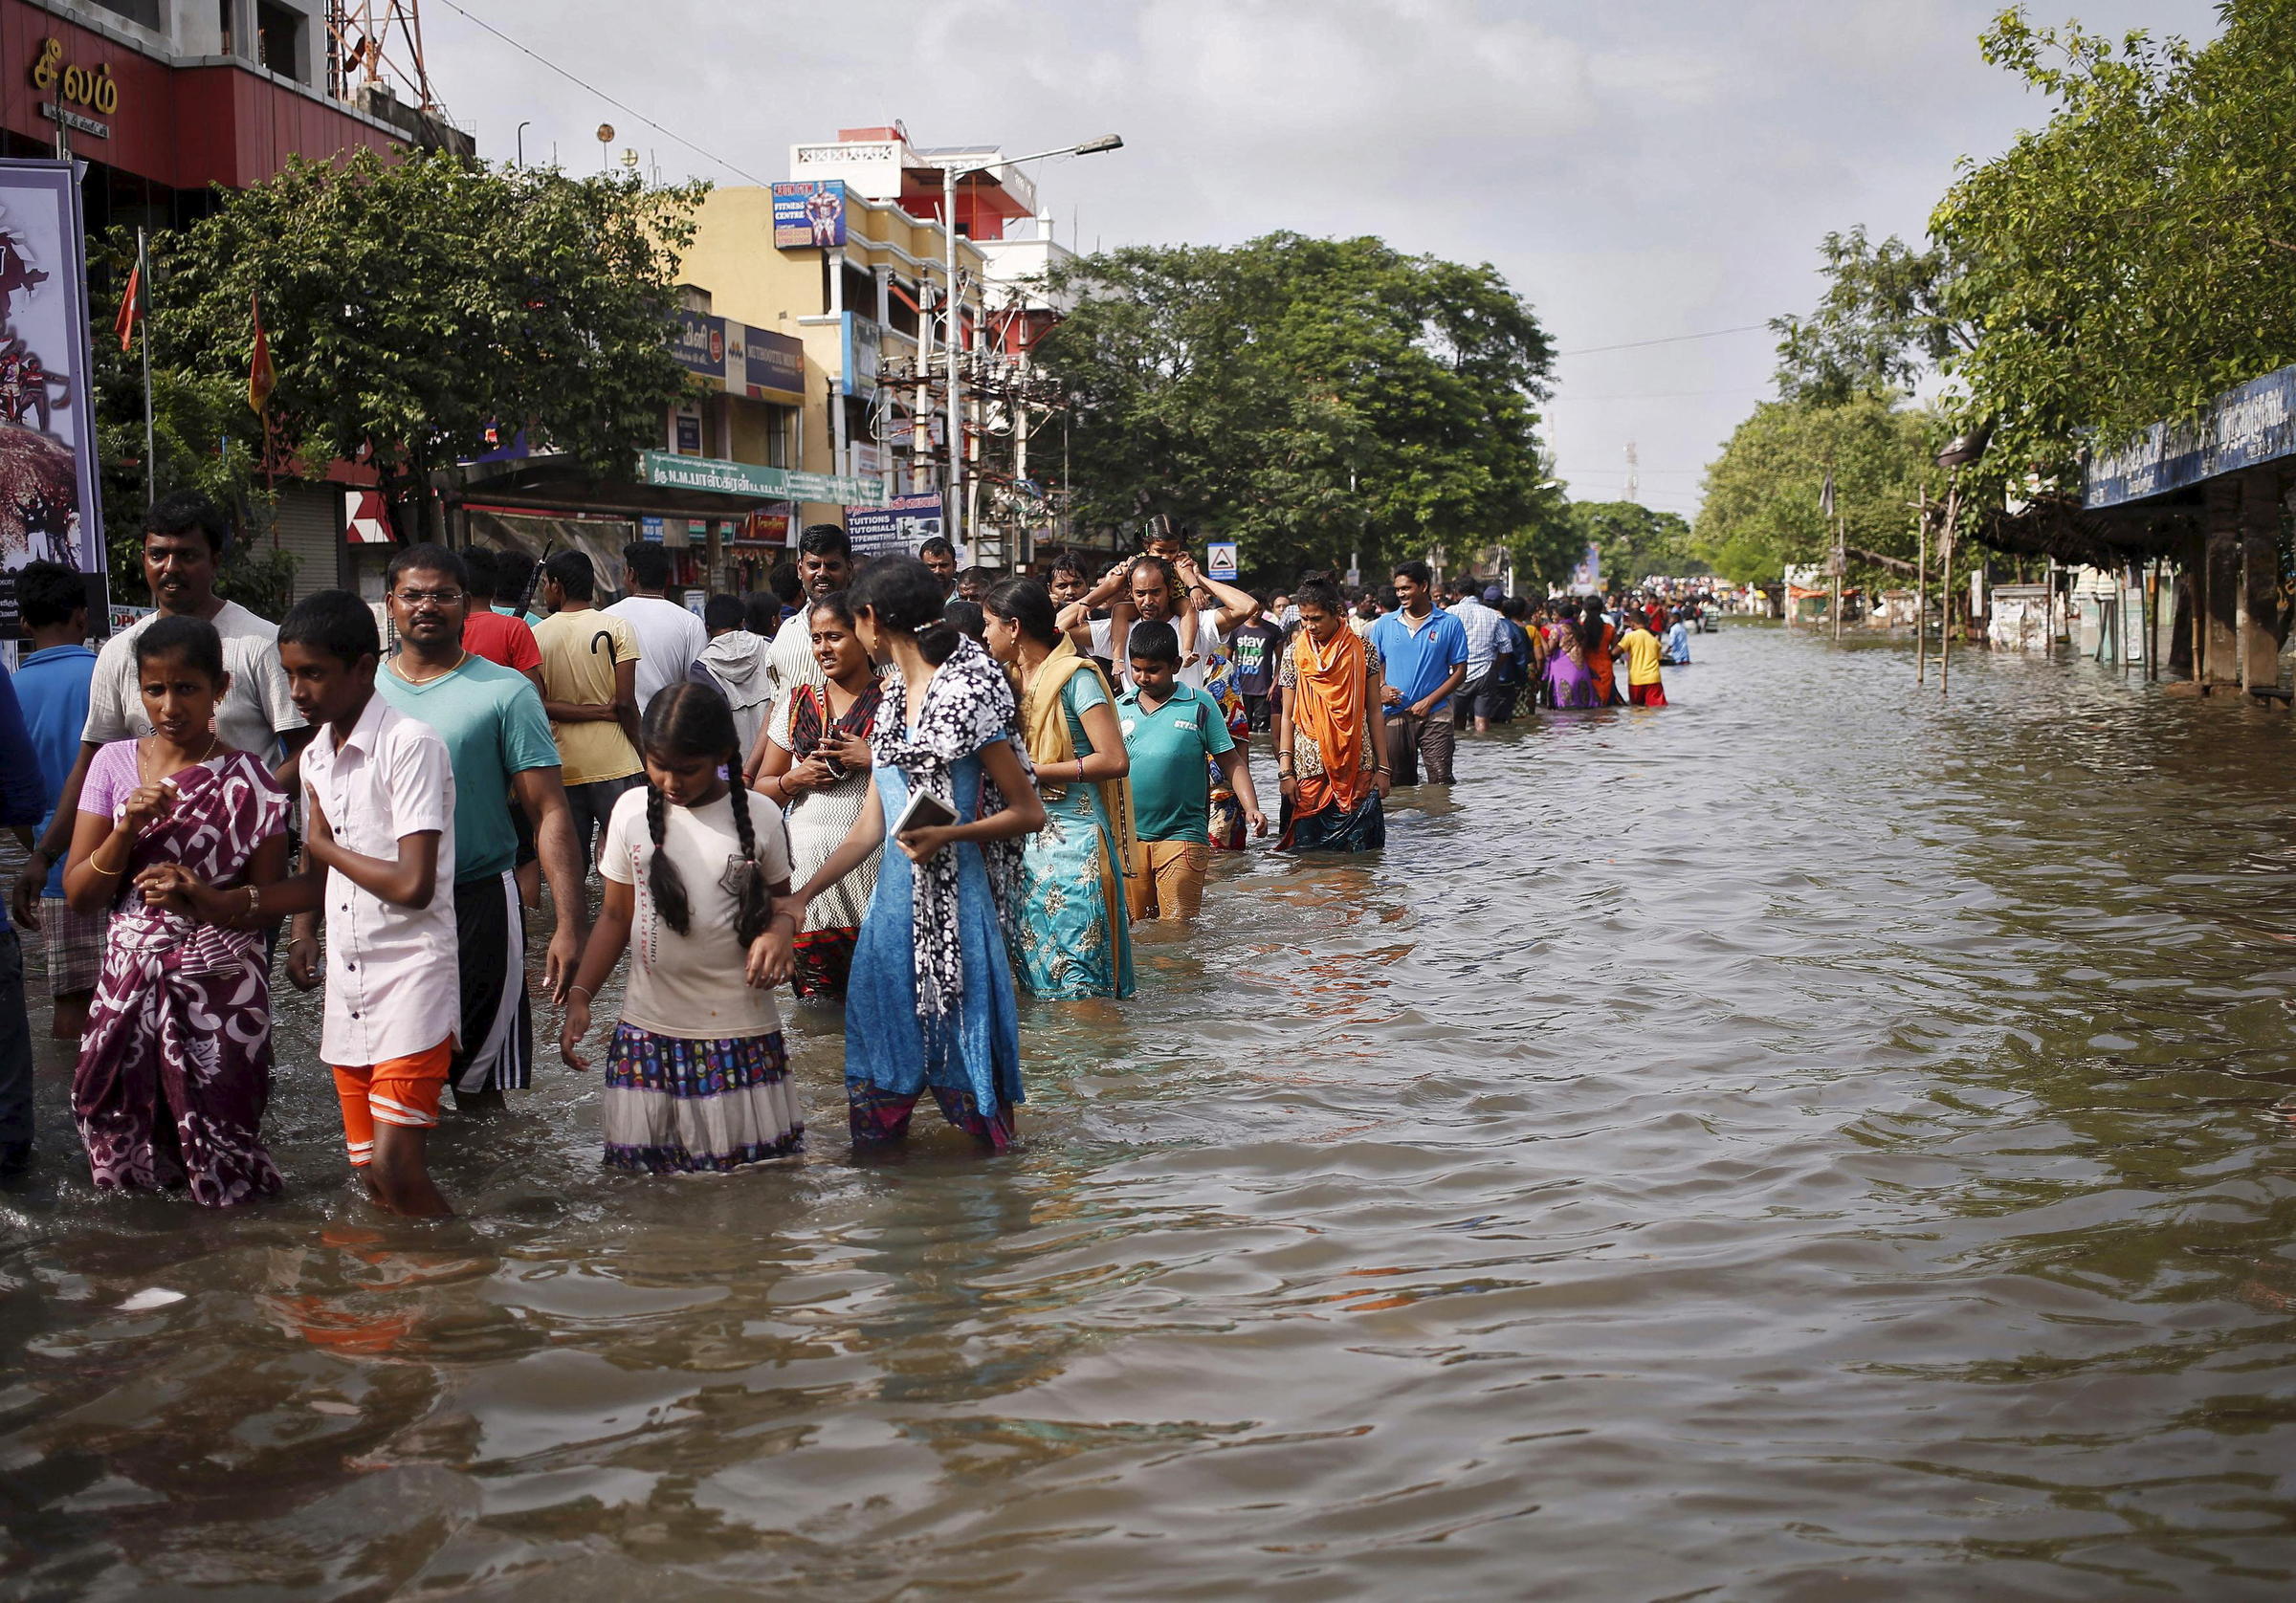 Coastal city of Chennai, India's fourth largest, experiences flooding